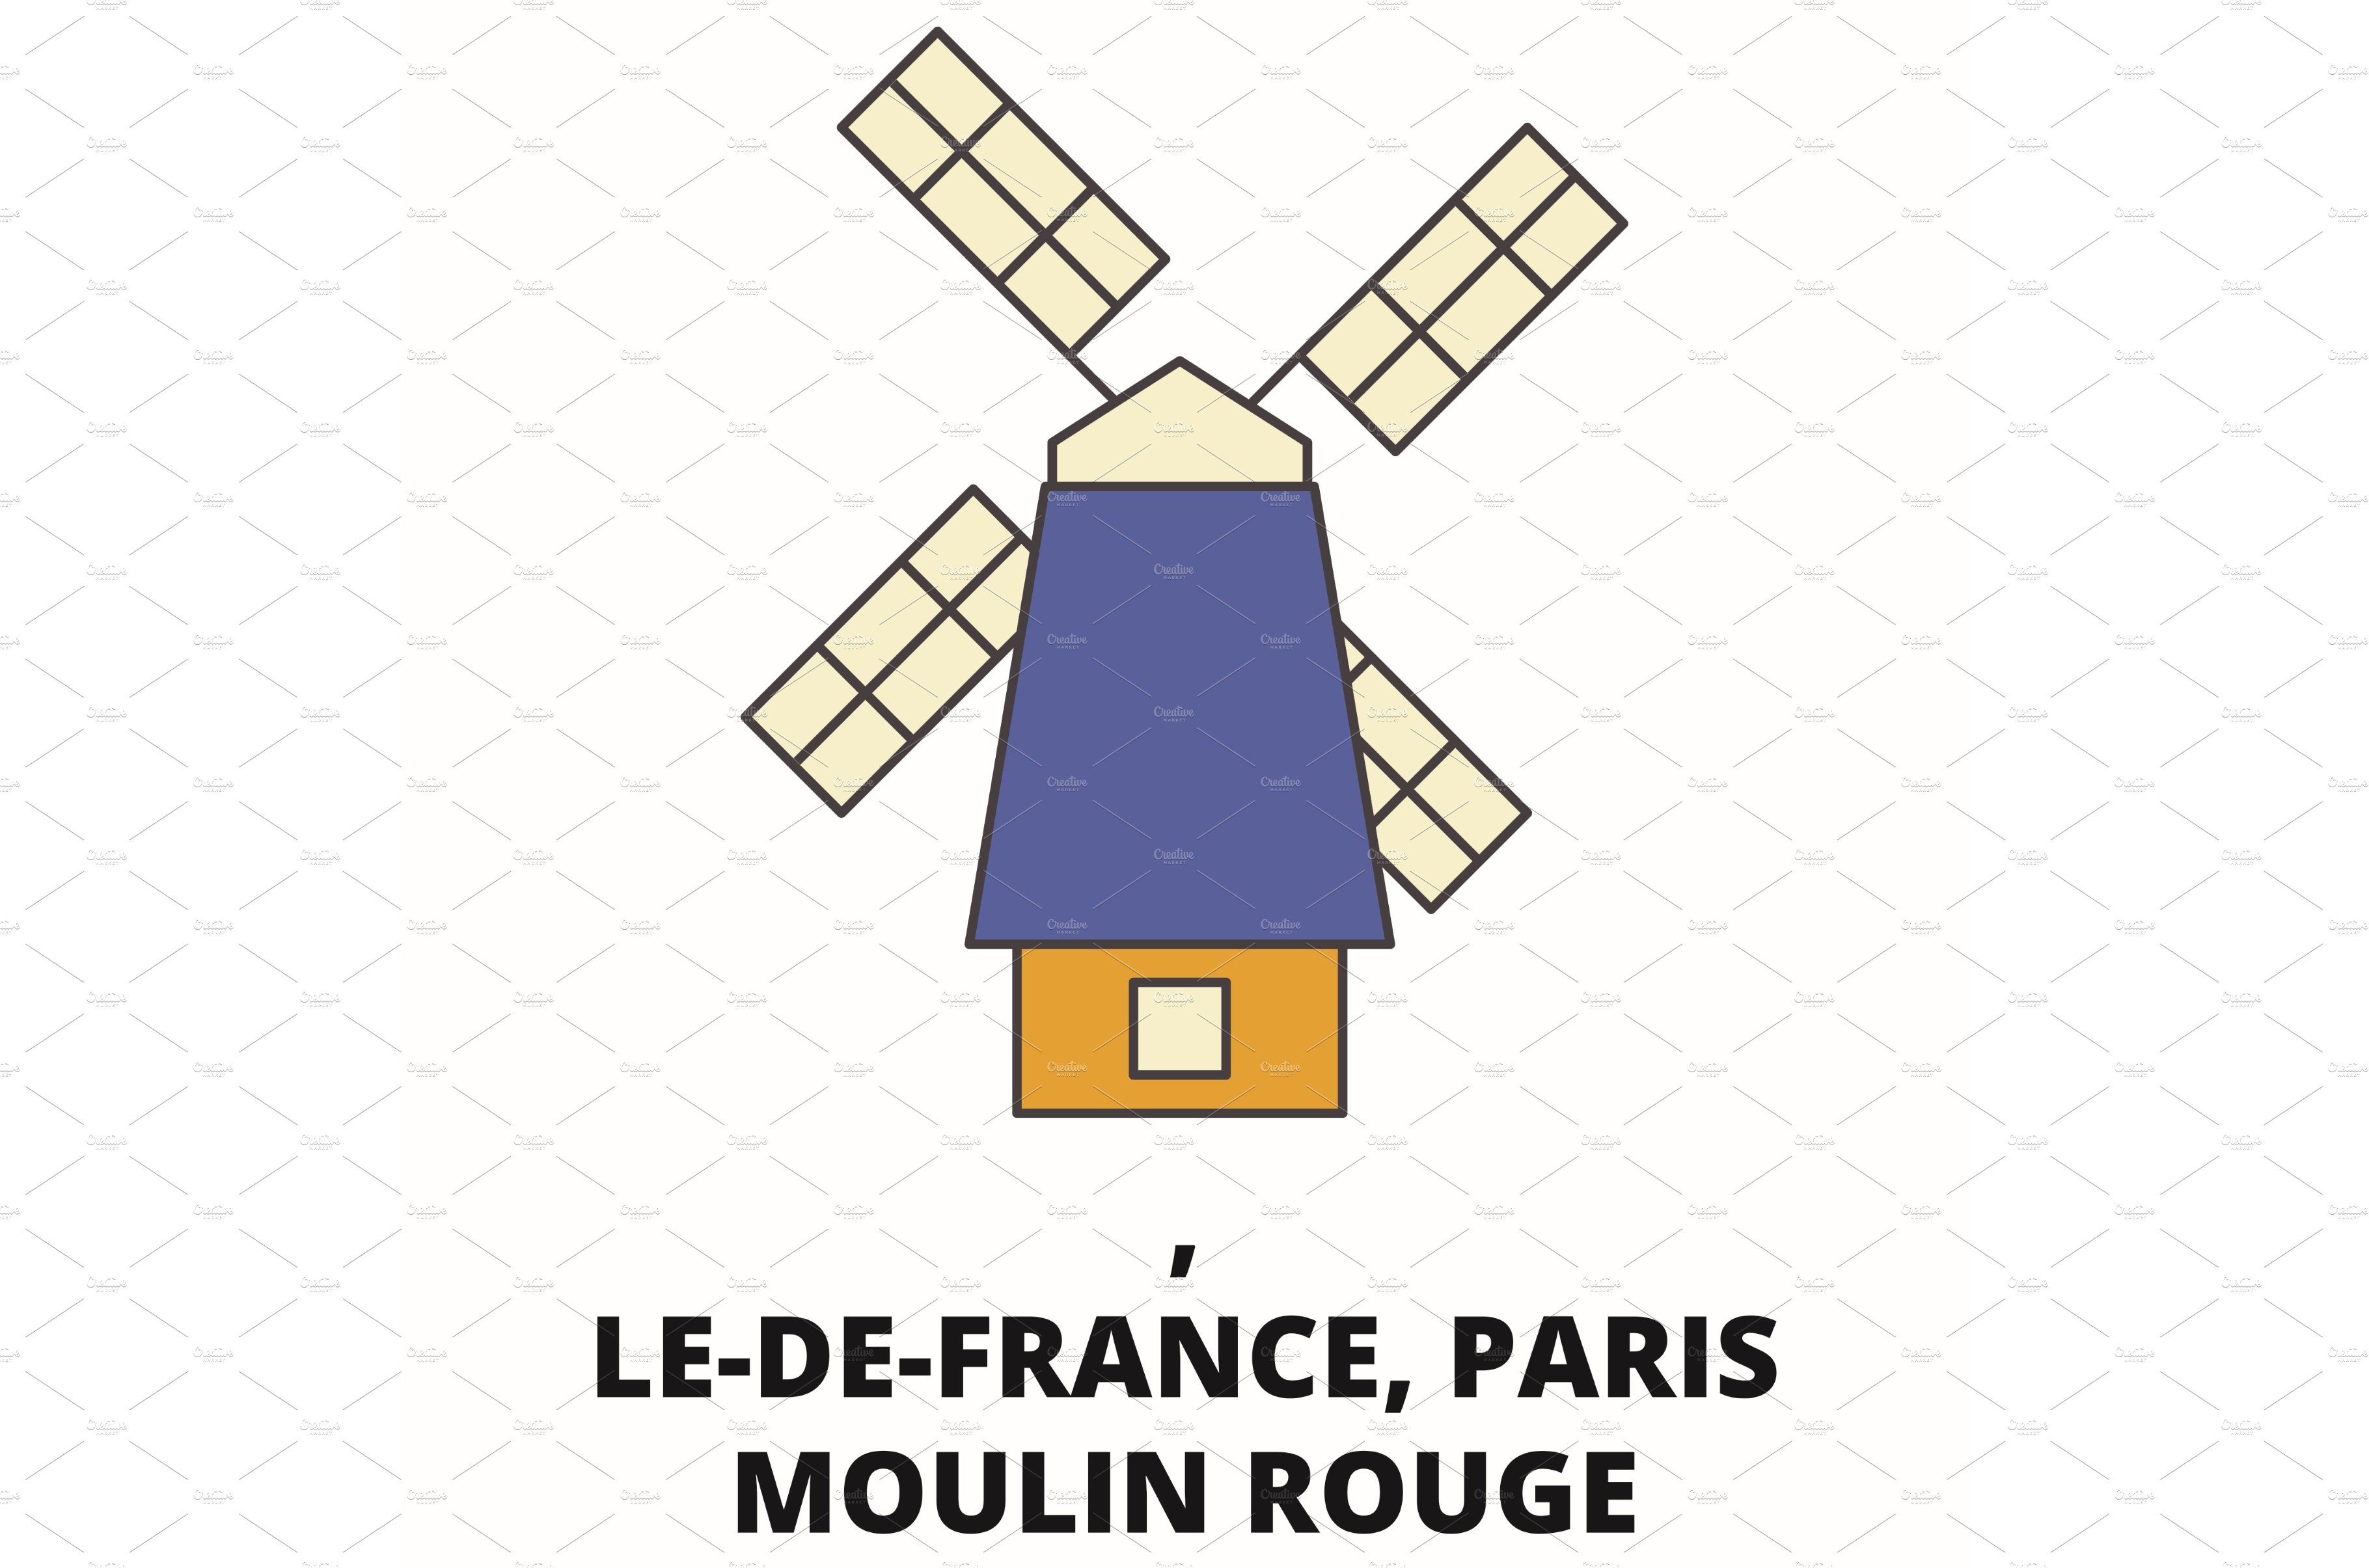 France, Le De France, Paris Moulin cover image.